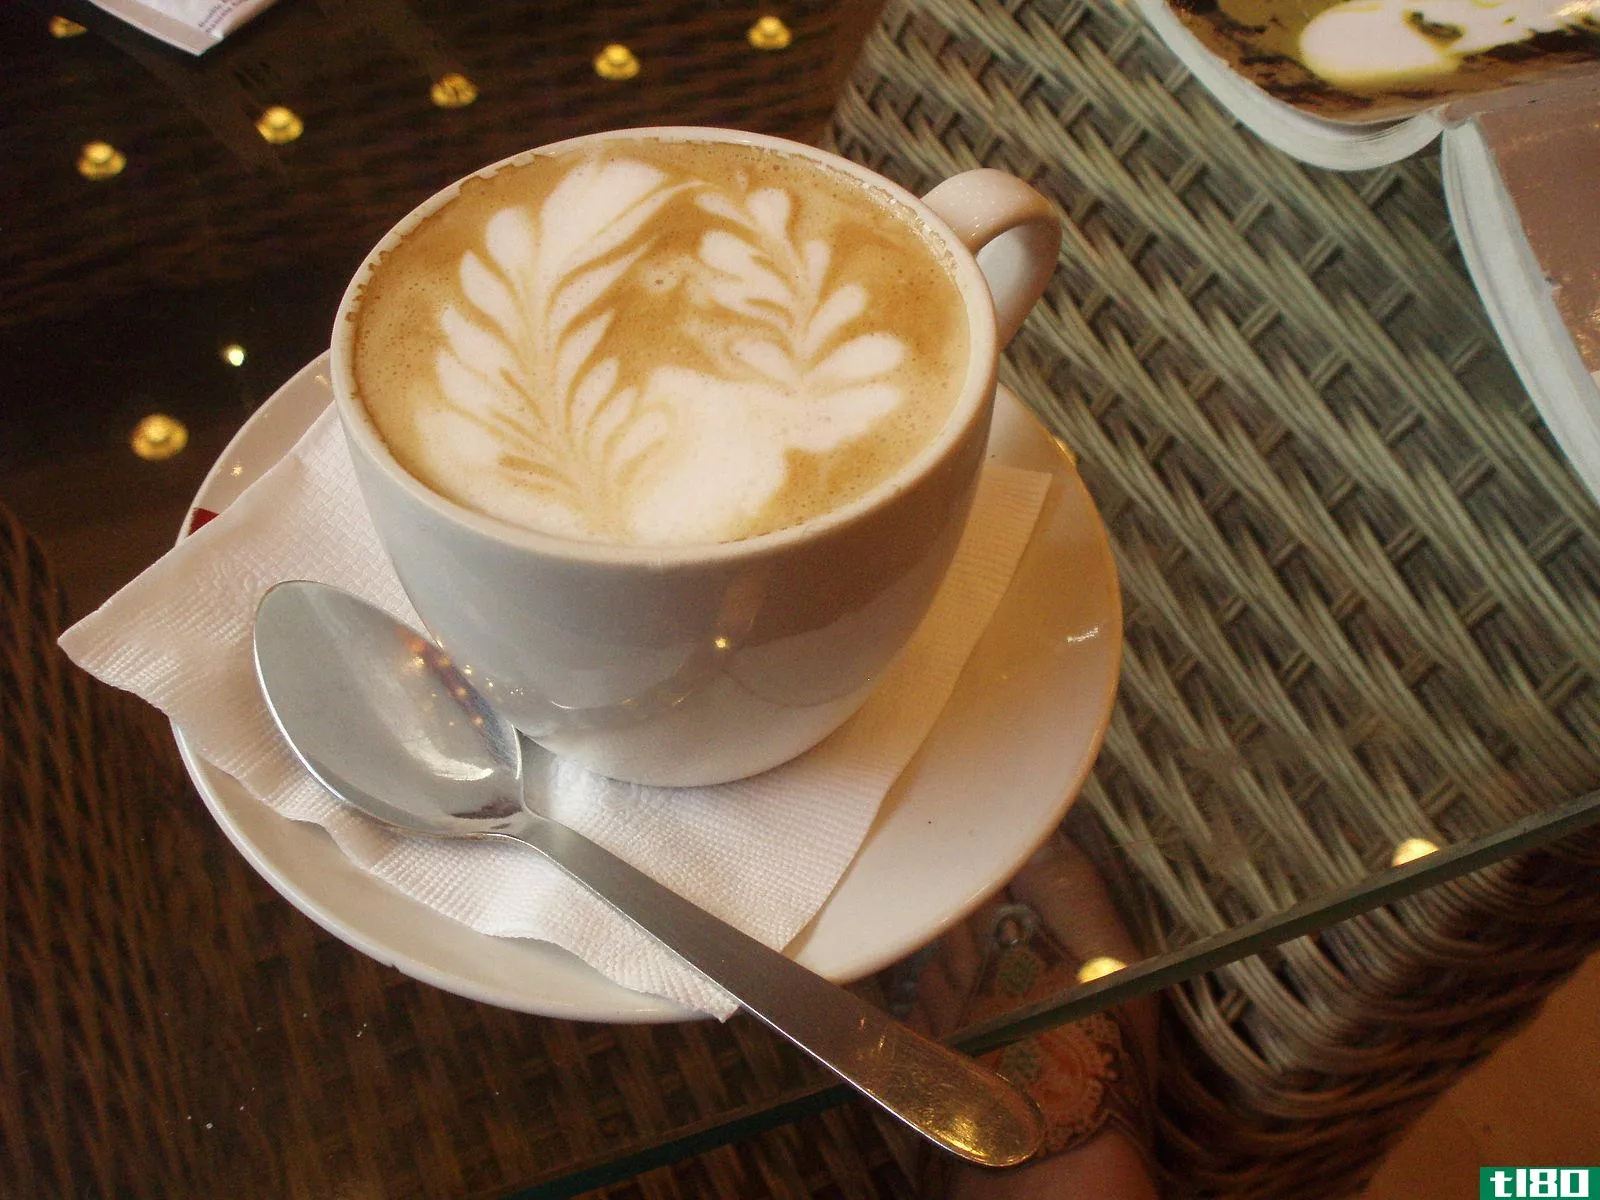 白咖啡(flat white)和拿铁(latte)的区别